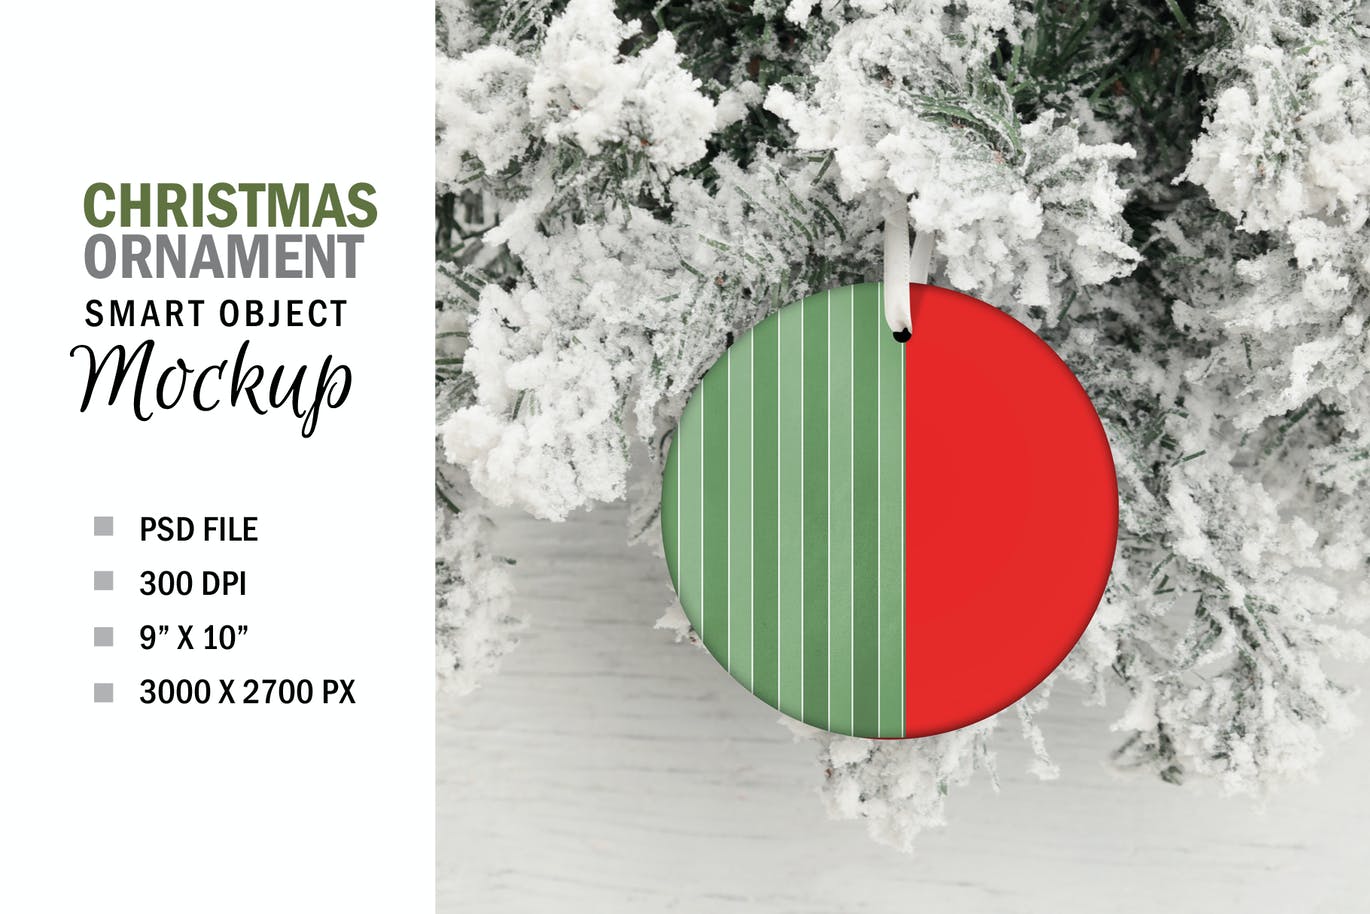 悬挂式圣诞树圆形装饰品设计样机 Round Christmas Tree Ornament Mockup设计素材模板